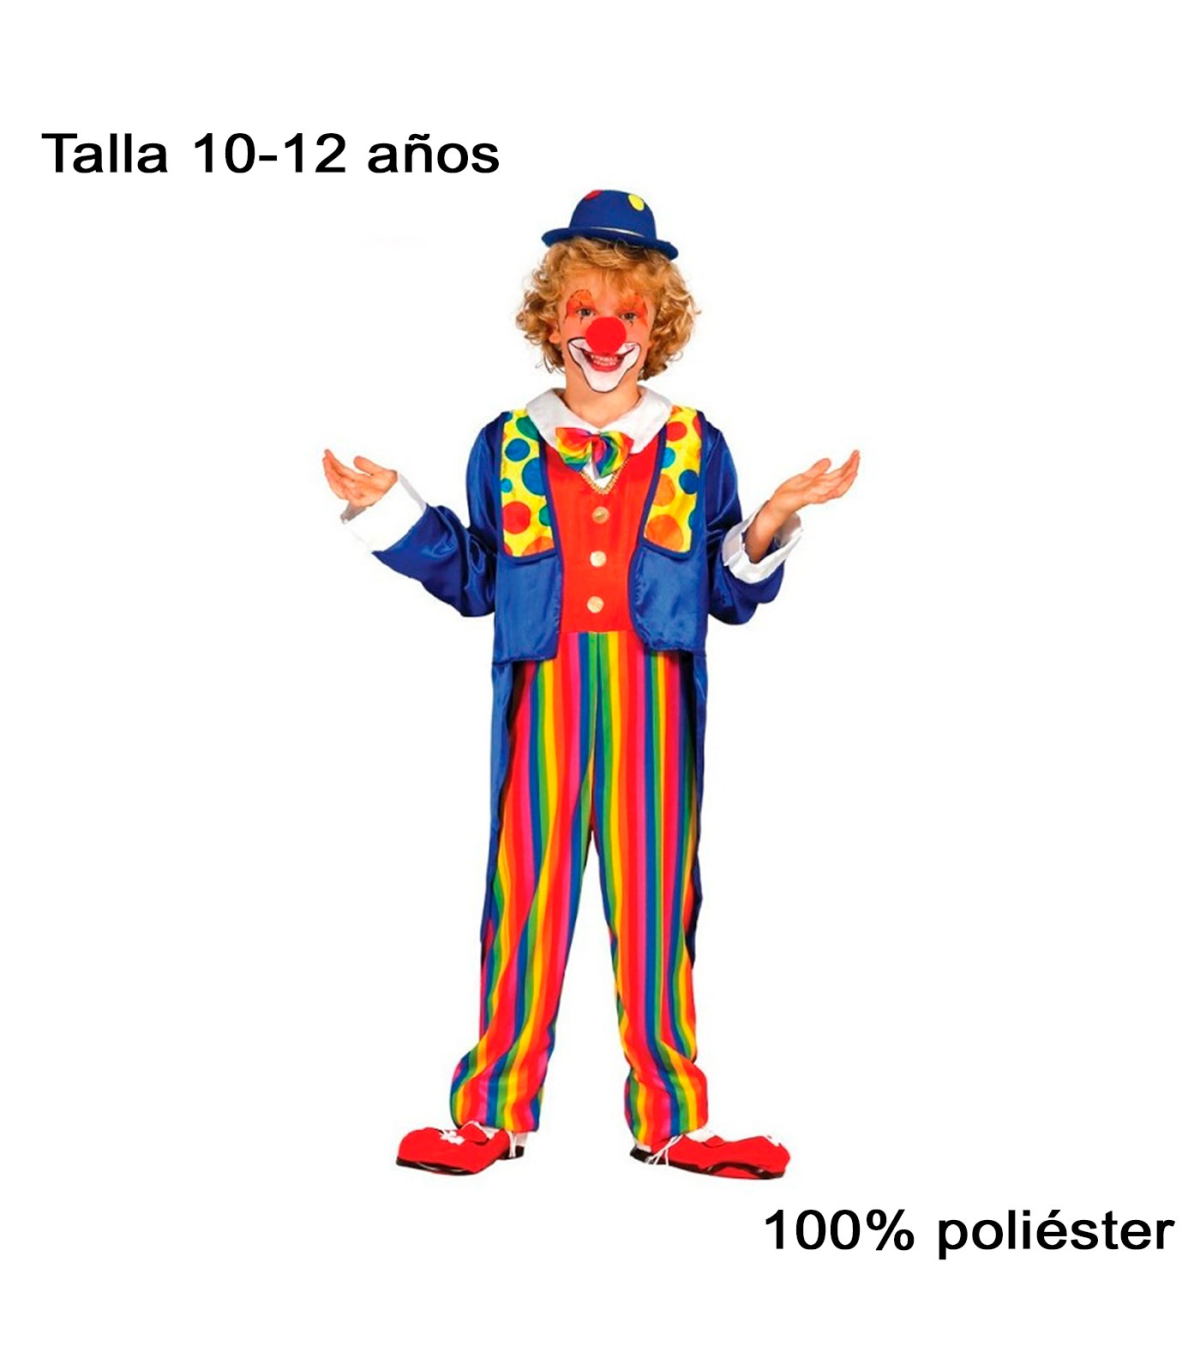 Tradineur - Disfraz de infantil, poliéster, incluye con pajarita y chaqueta, niños, carnaval, Halloween,